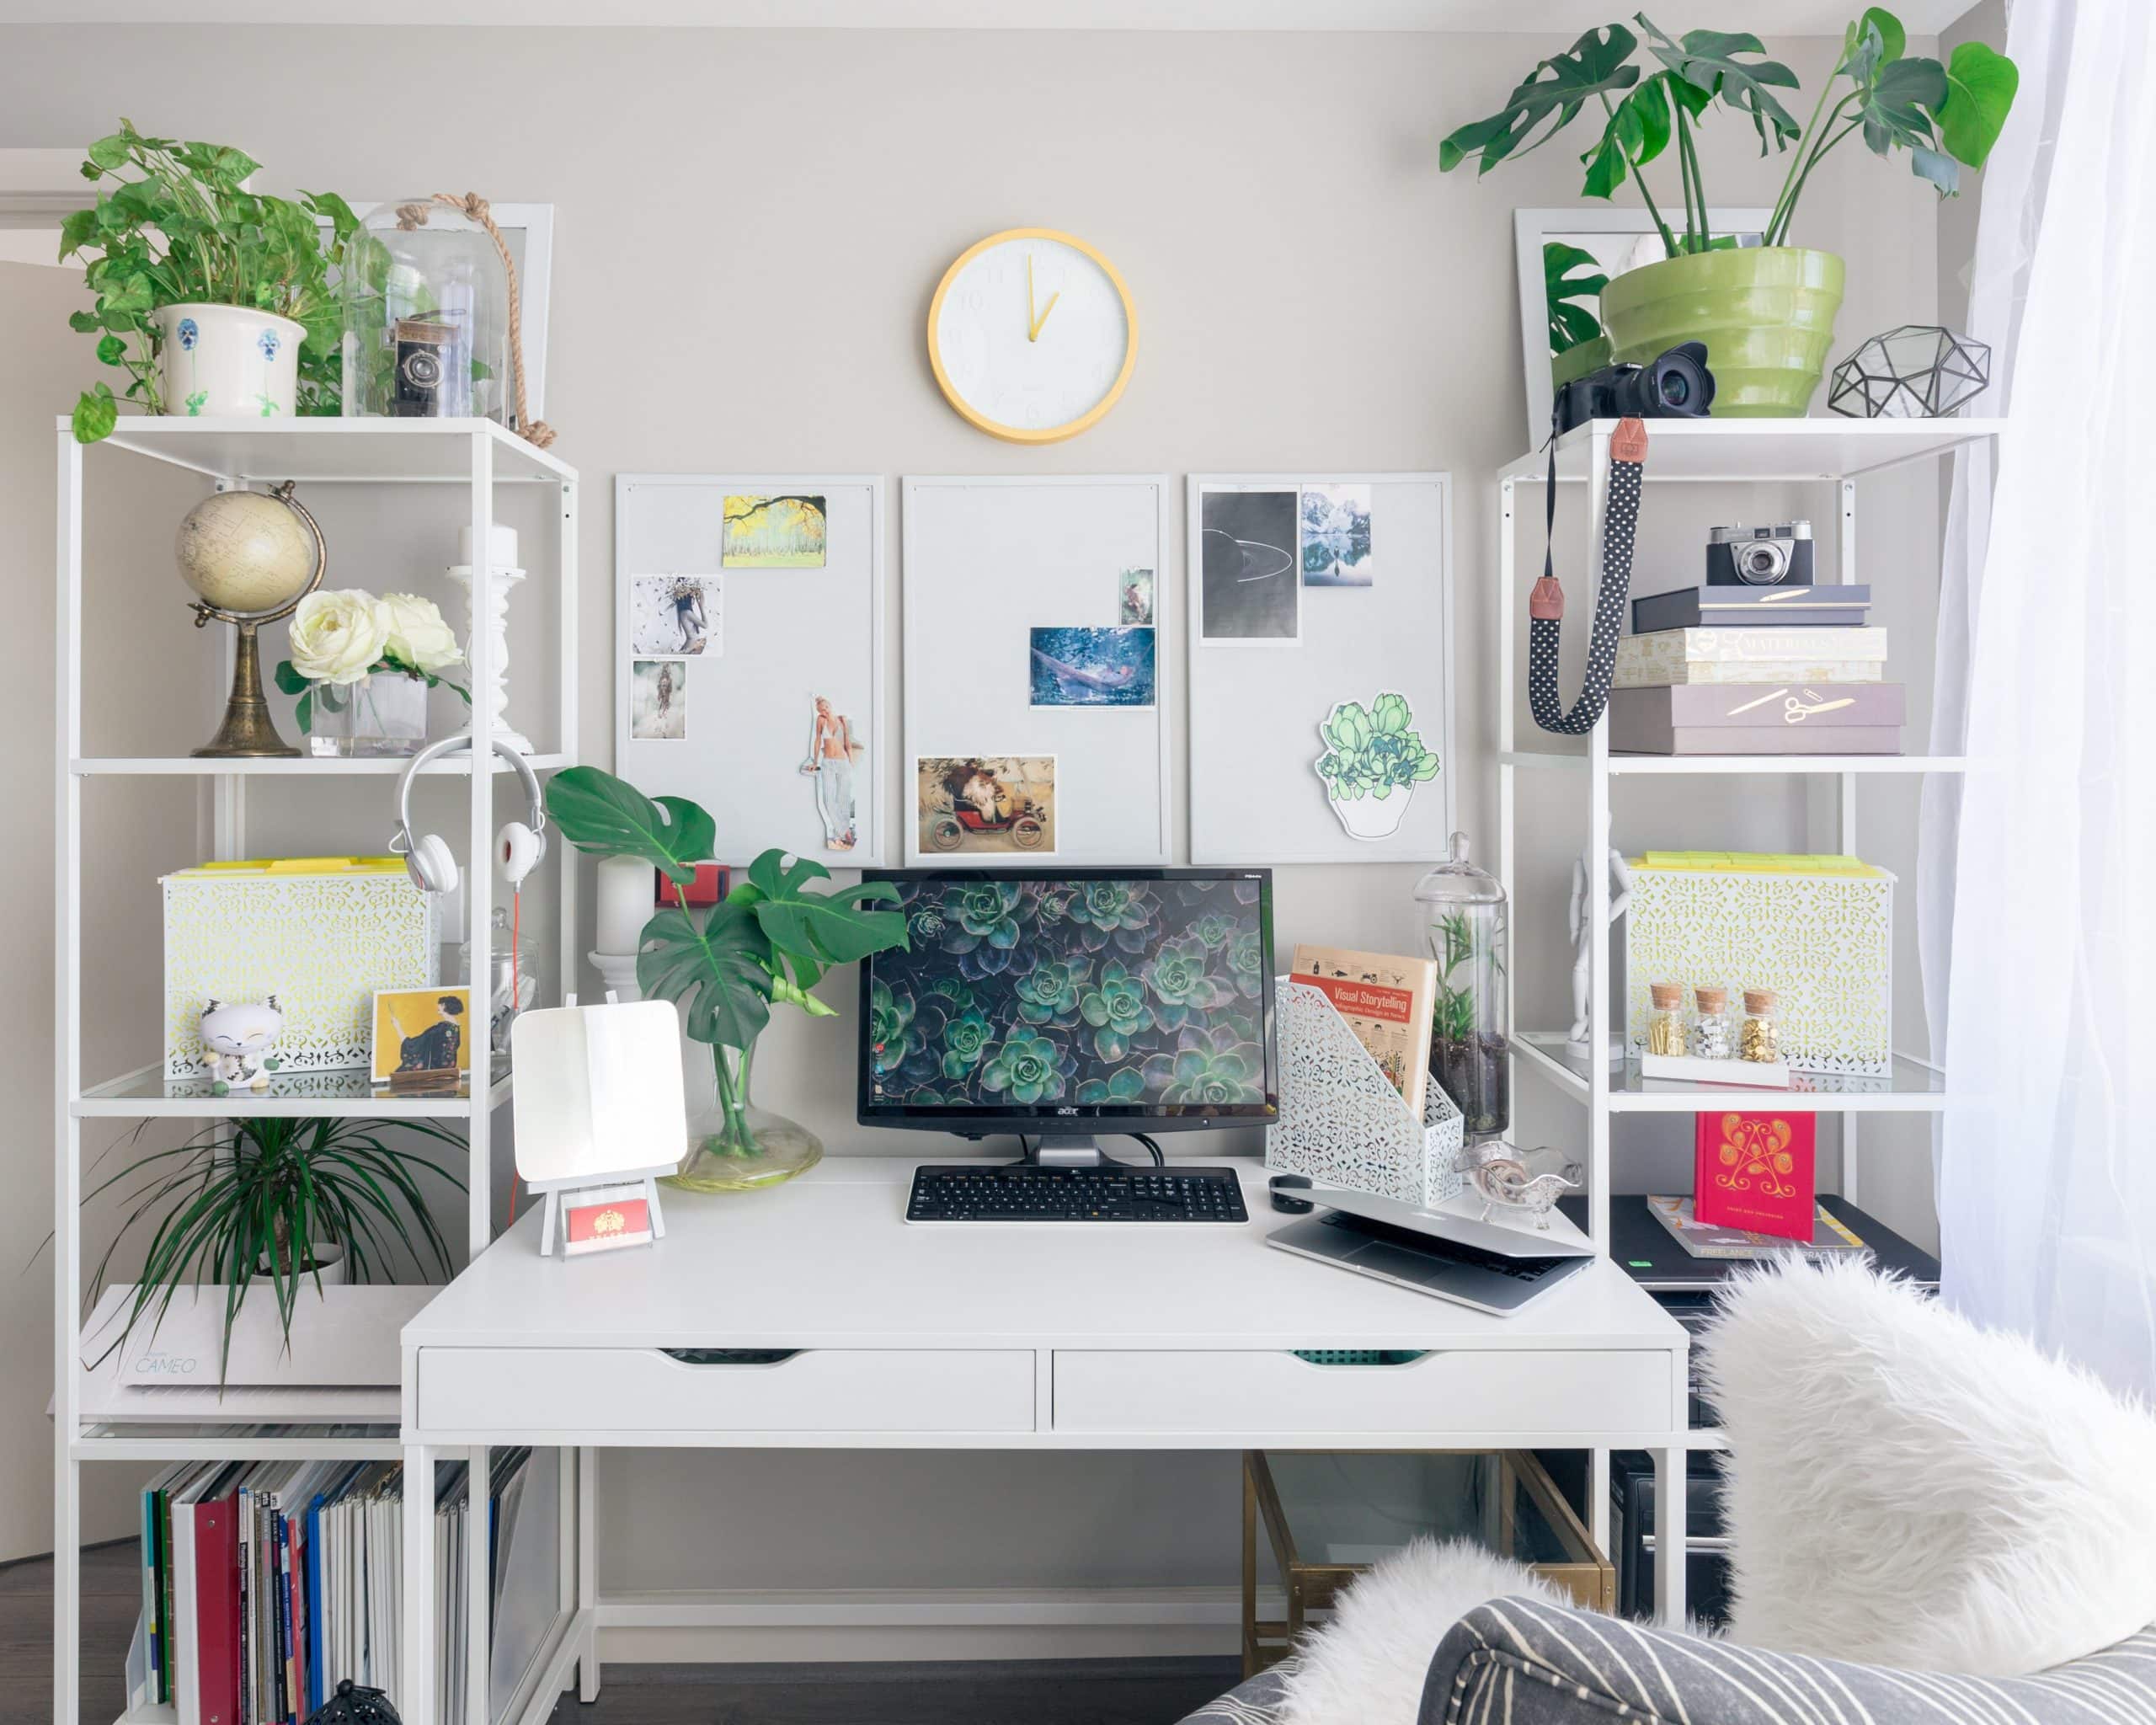 Les astuces pour bien décorer votre bureau – Carabin